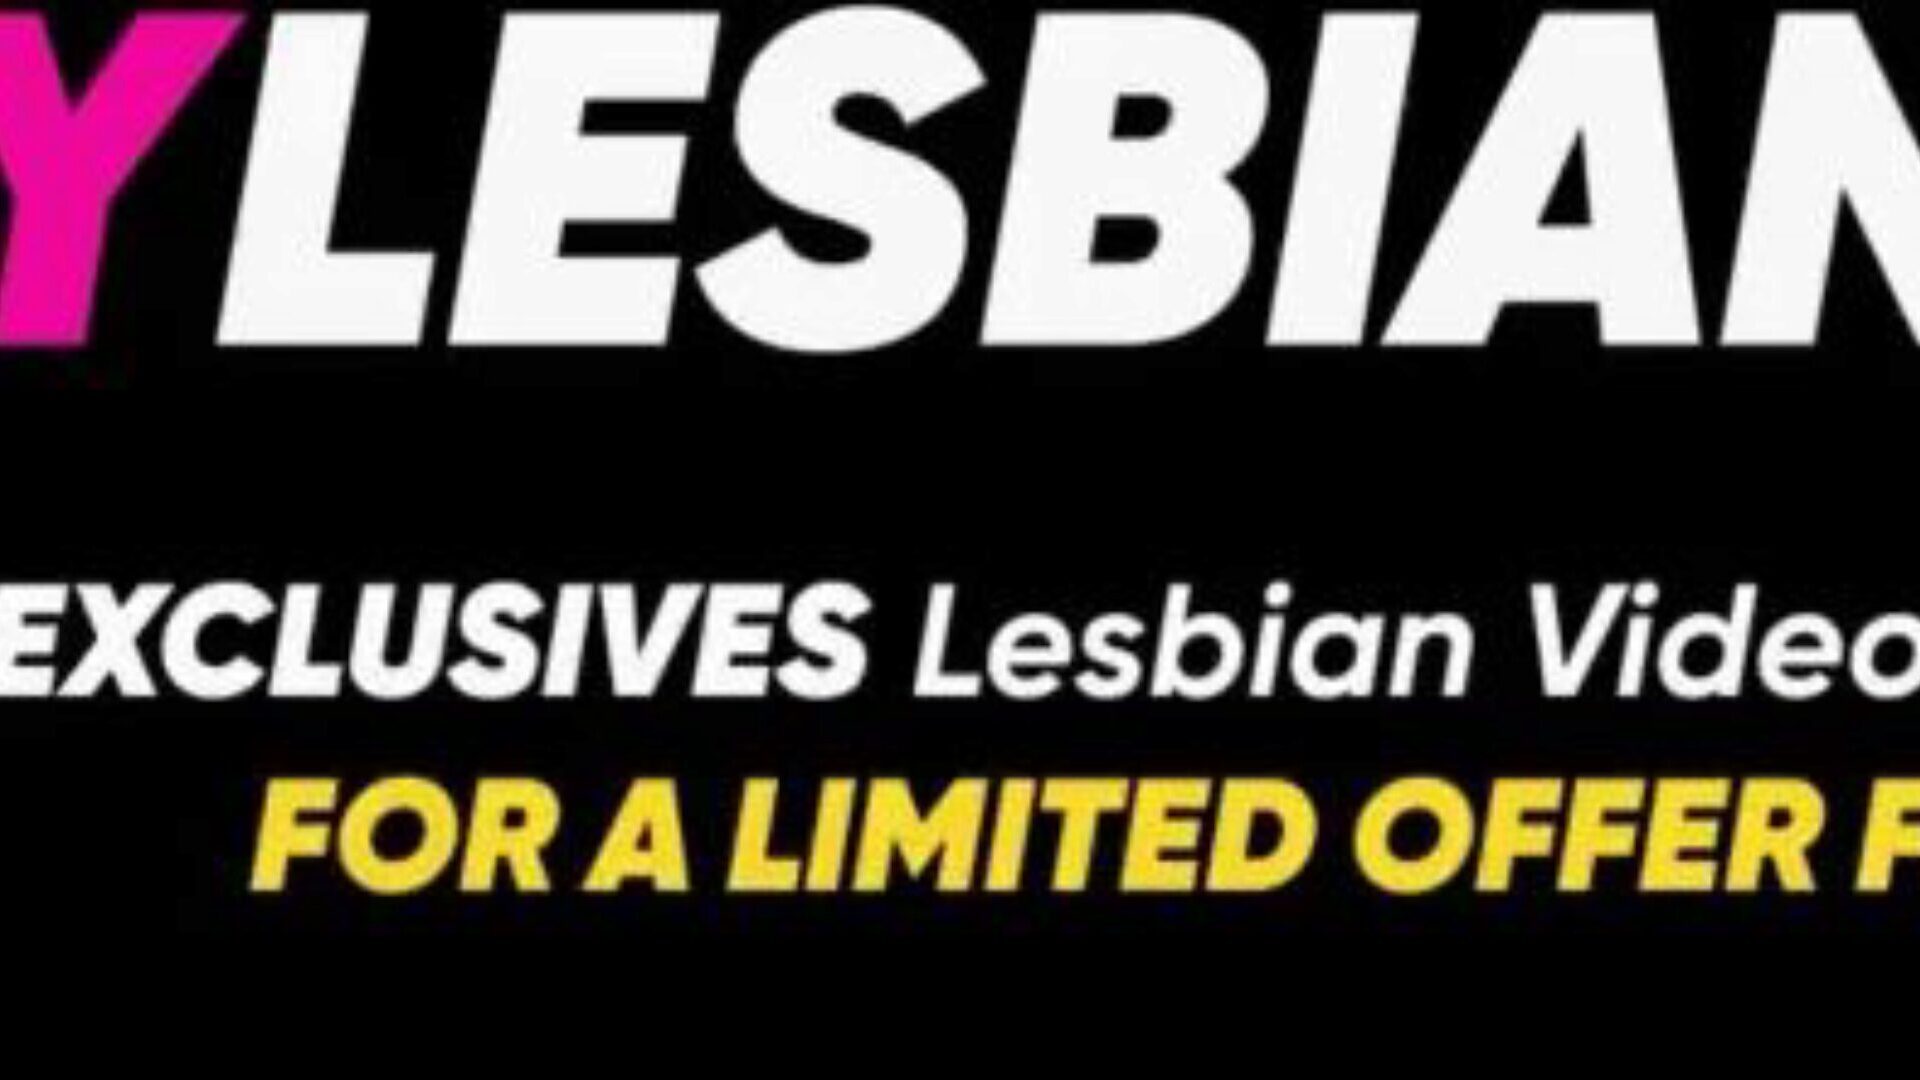 lesbijski analingus z Riley Reid - musisz zobaczyć, niesamowite!